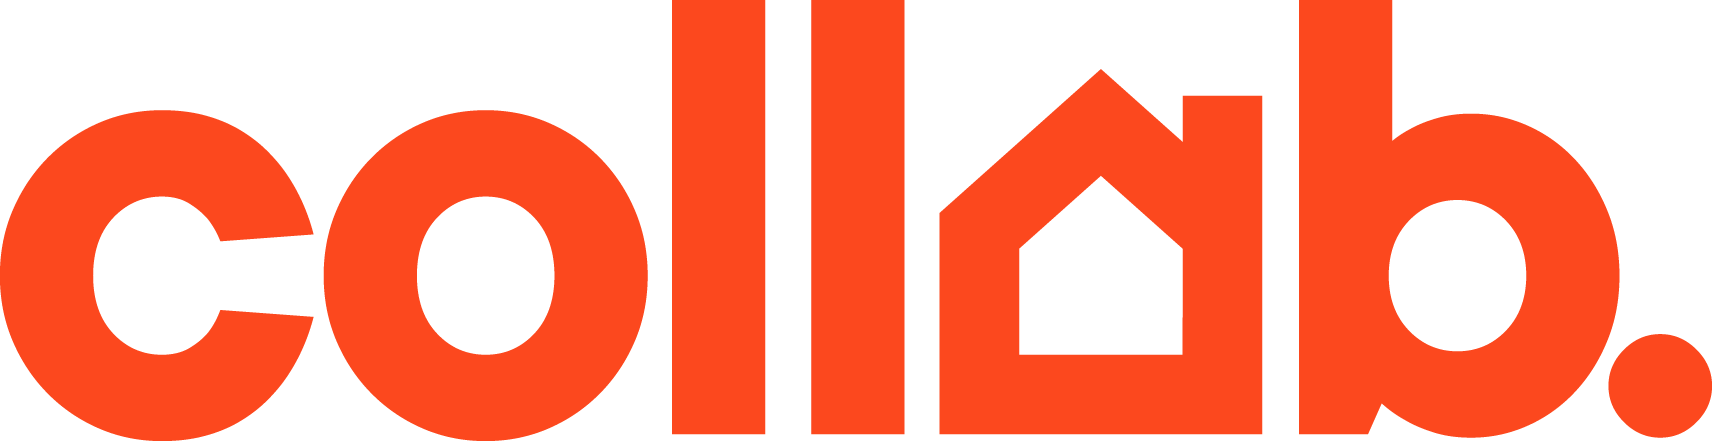 Collab Logo_Orange.png